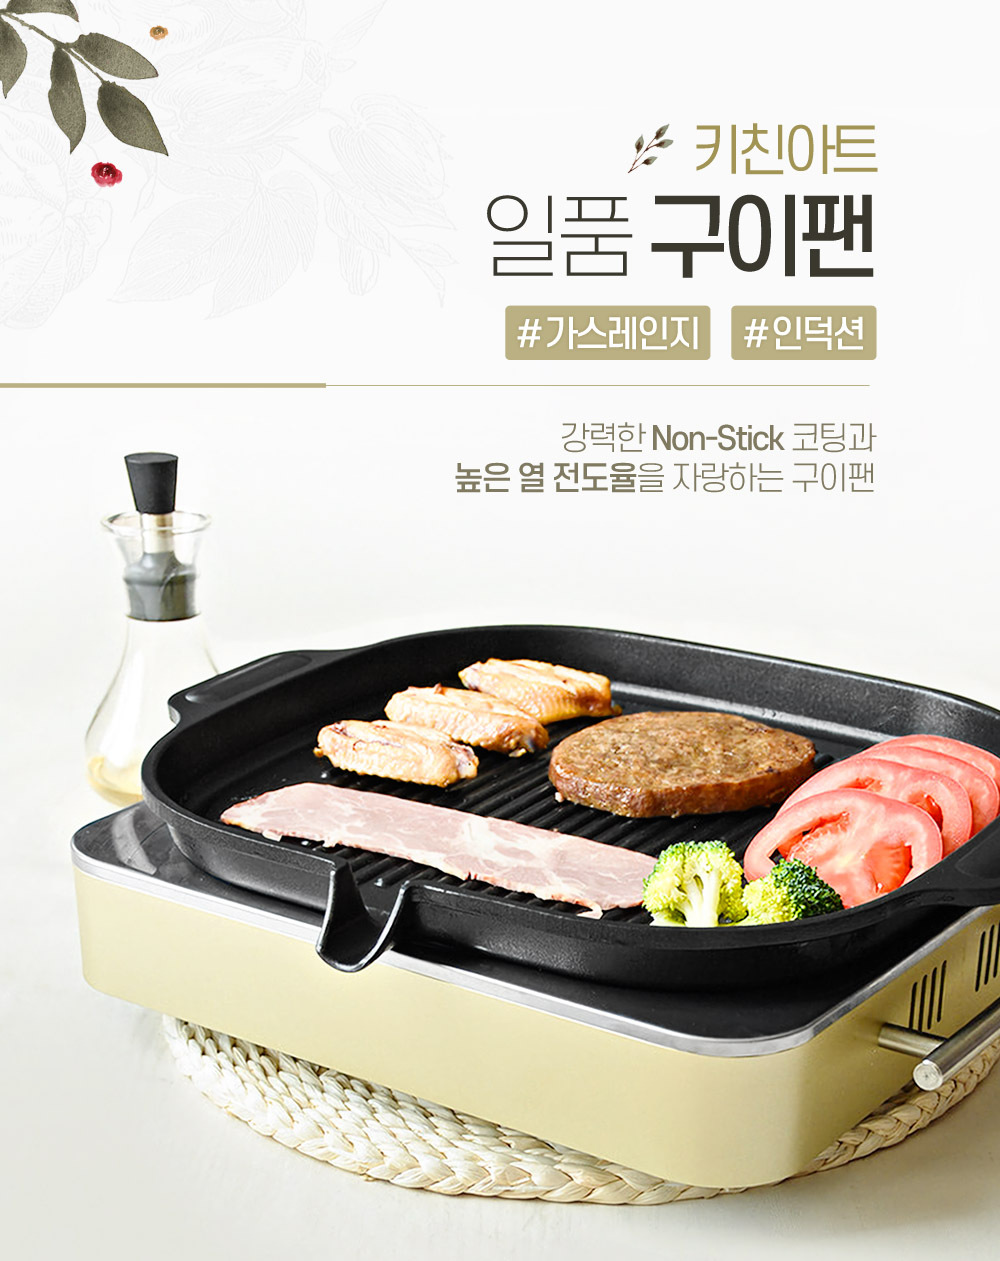 韓國食品-[키친아트] 인덕션겸용 일품 원형구이팬 고기불판 구이판 38.5x30cm